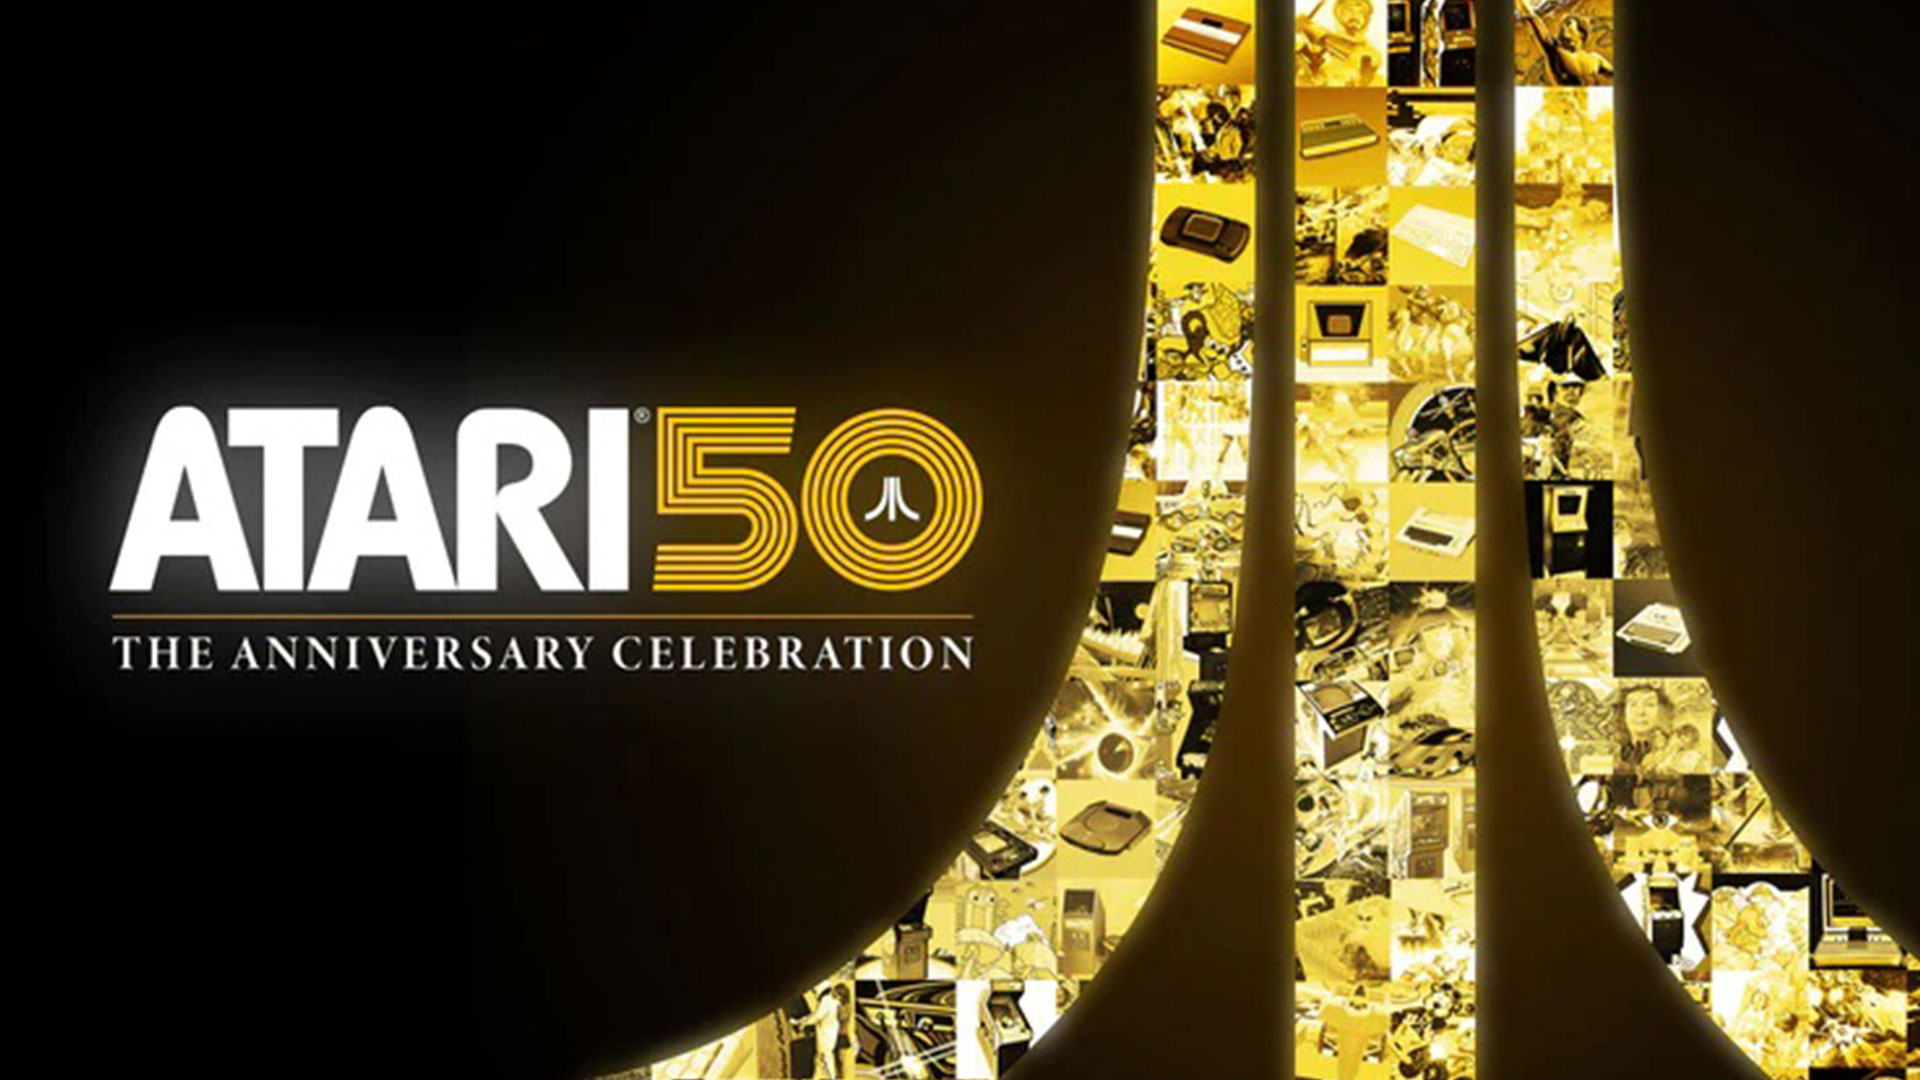 Atari 50: The Anniversary Celebration: Anthologie veröffentlicht